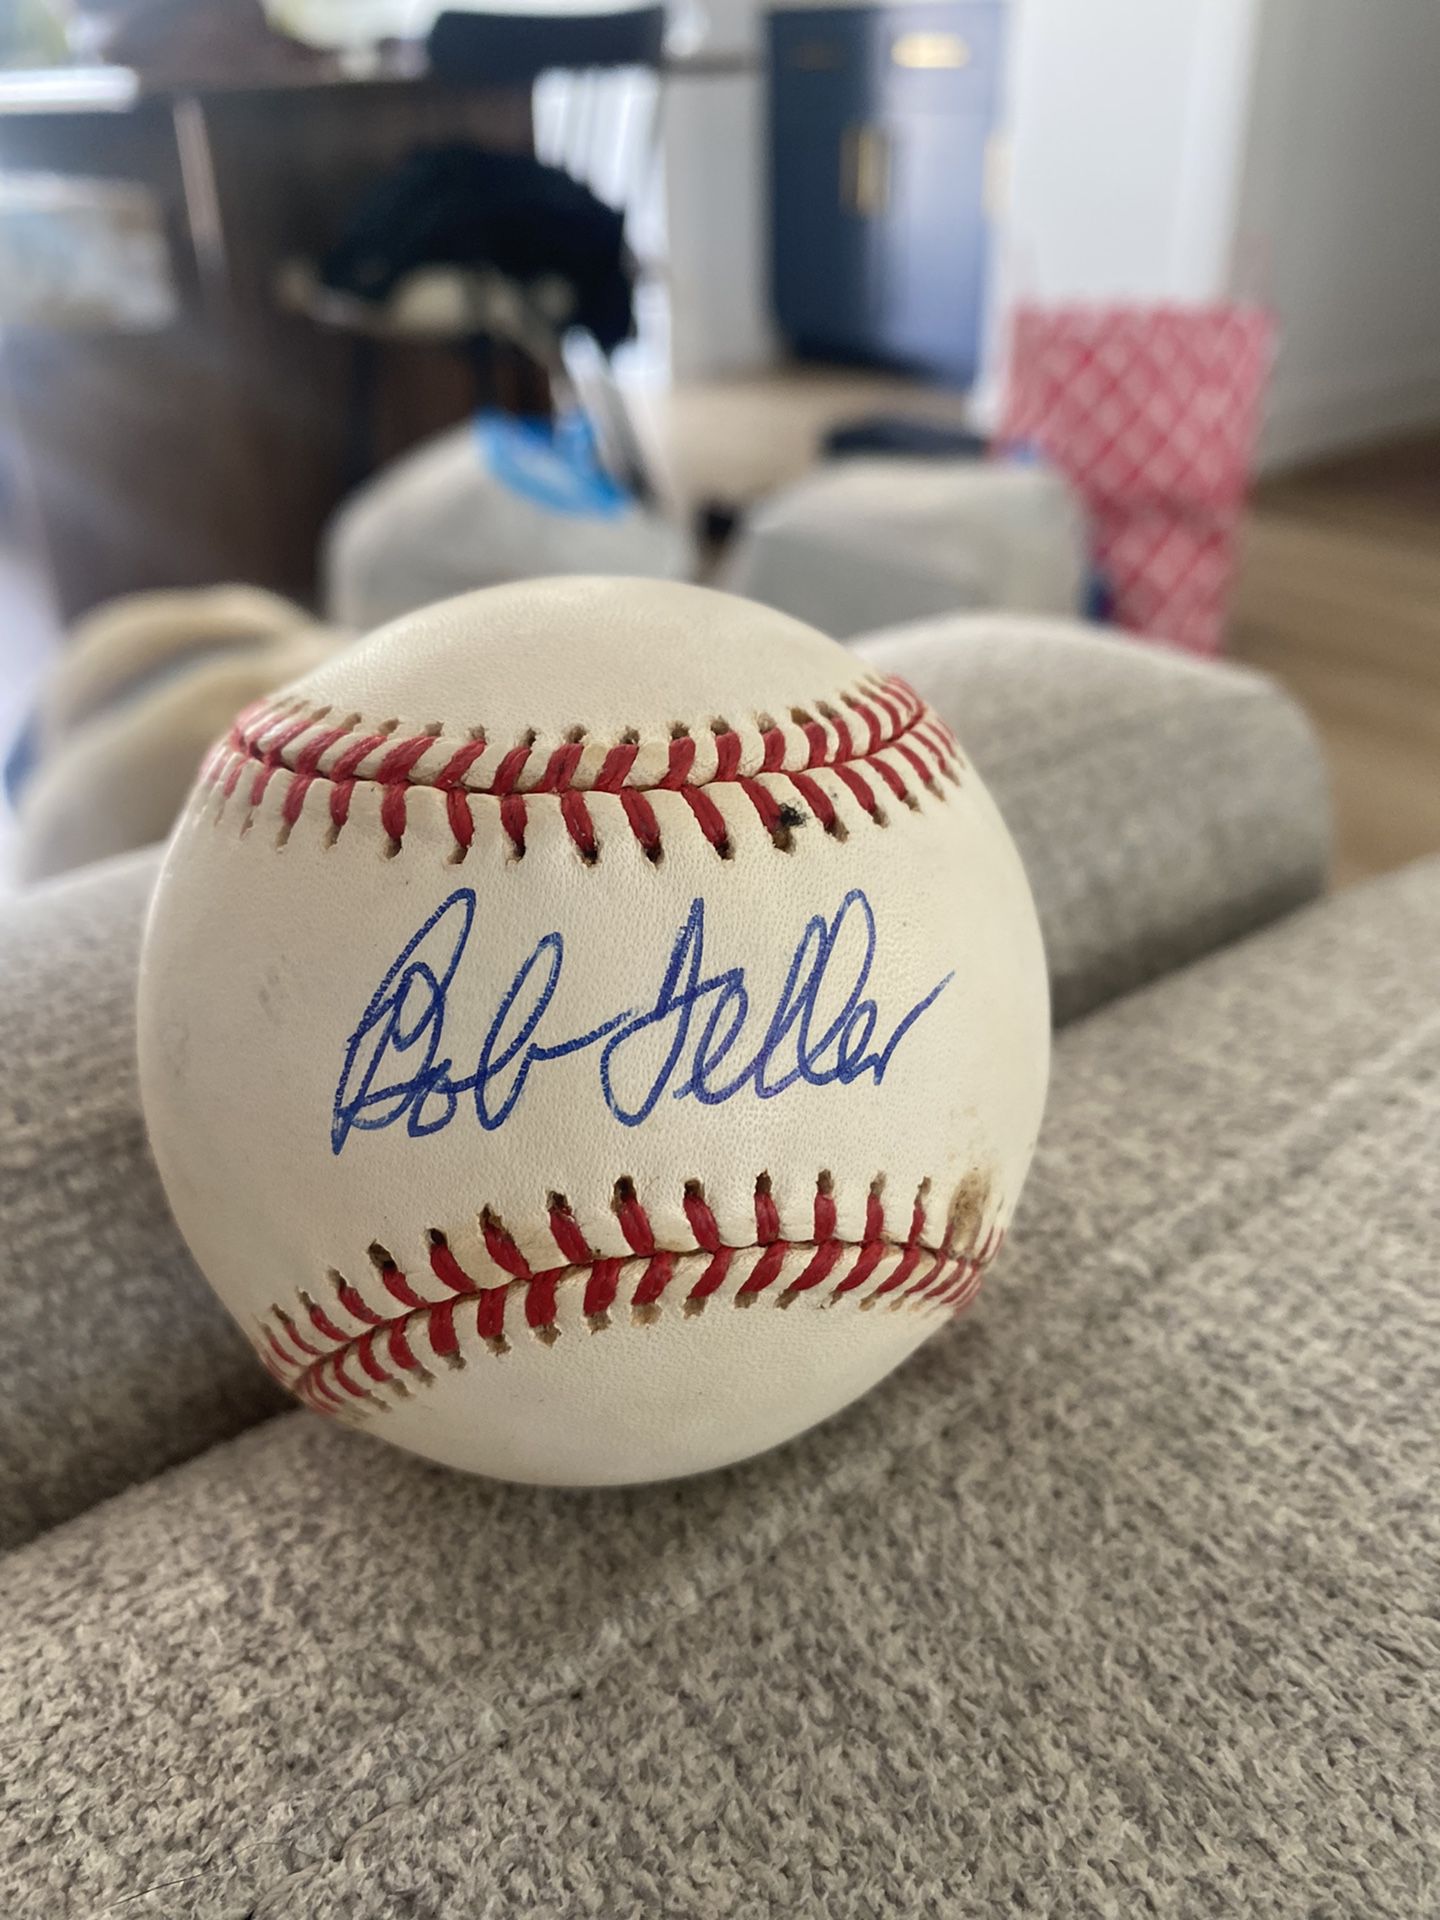 Bob Feller Signed Baseball for Sale in Torrance, CA - OfferUp